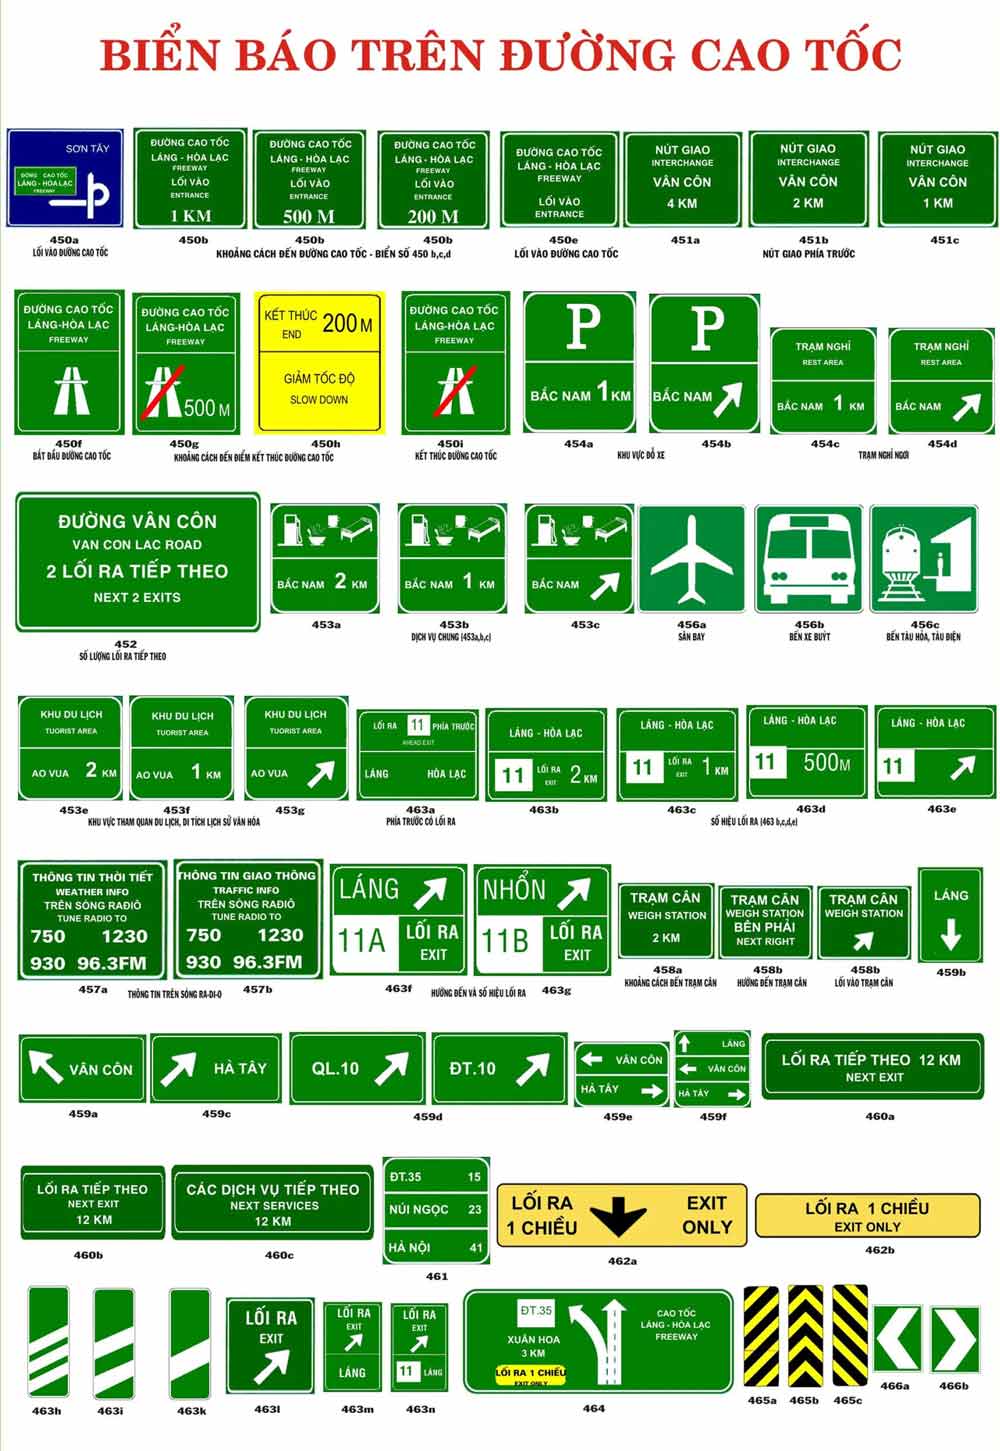 Biển báo giao thông đường bộ: Tại Việt Nam, việc nắm rõ các biển báo giao thông là rất quan trọng để đảm bảo an toàn khi tham gia giao thông đường bộ. Cùng theo dõi những hình ảnh mới nhất về các biển báo đường bộ để nâng cao kiến thức của mình và đảm bảo an toàn cho chính bản thân và những người tham gia giao thông khác.